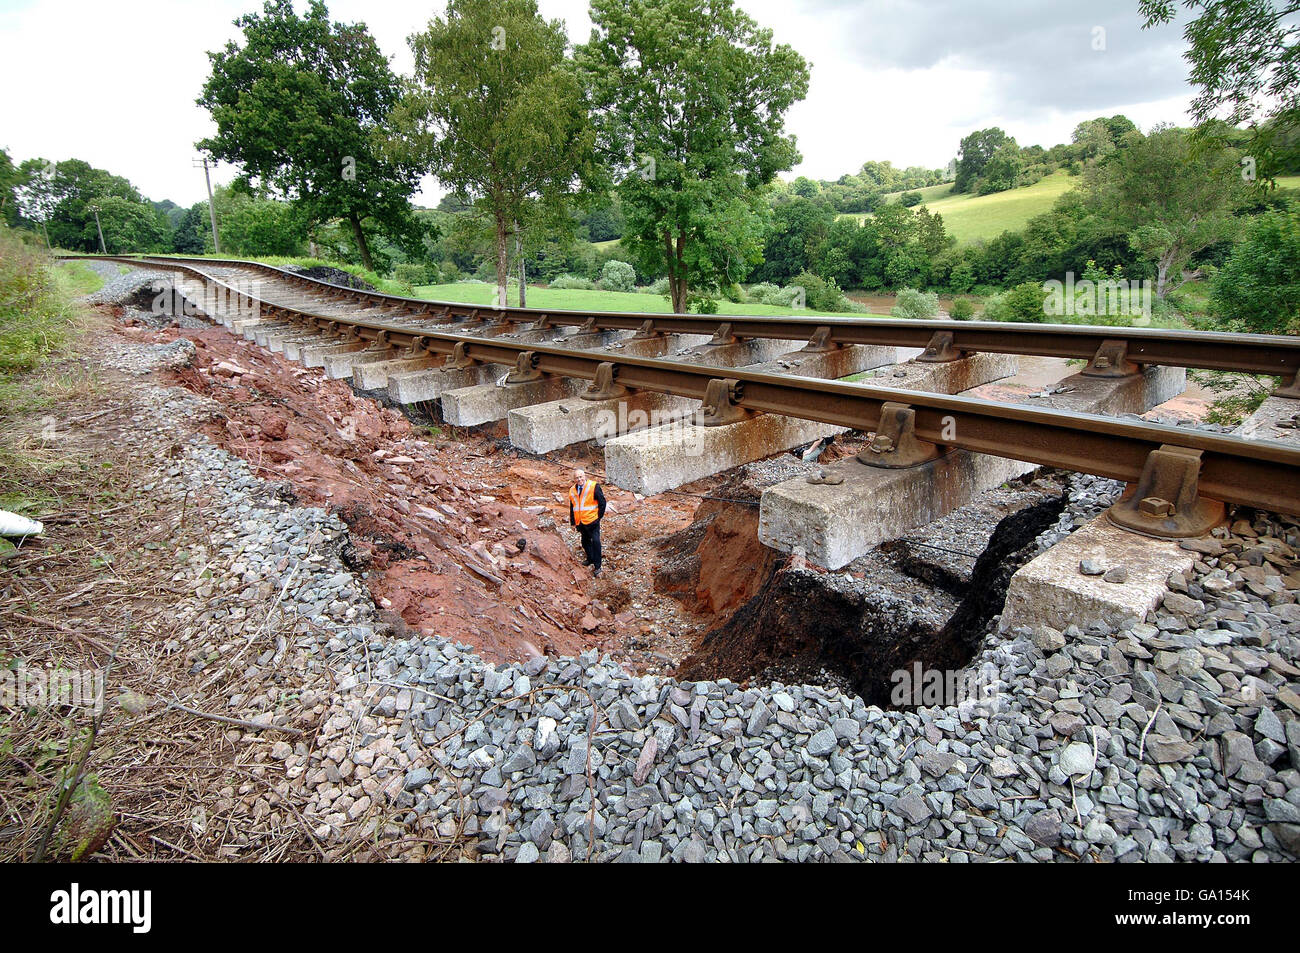 John Leech, du Severn Valley Railway, examine les dommages causés par les inondations soudaines de nuit, à la ligne de chemin de fer de la compagnie à l'extérieur du village de Highley, Shropshire. Banque D'Images